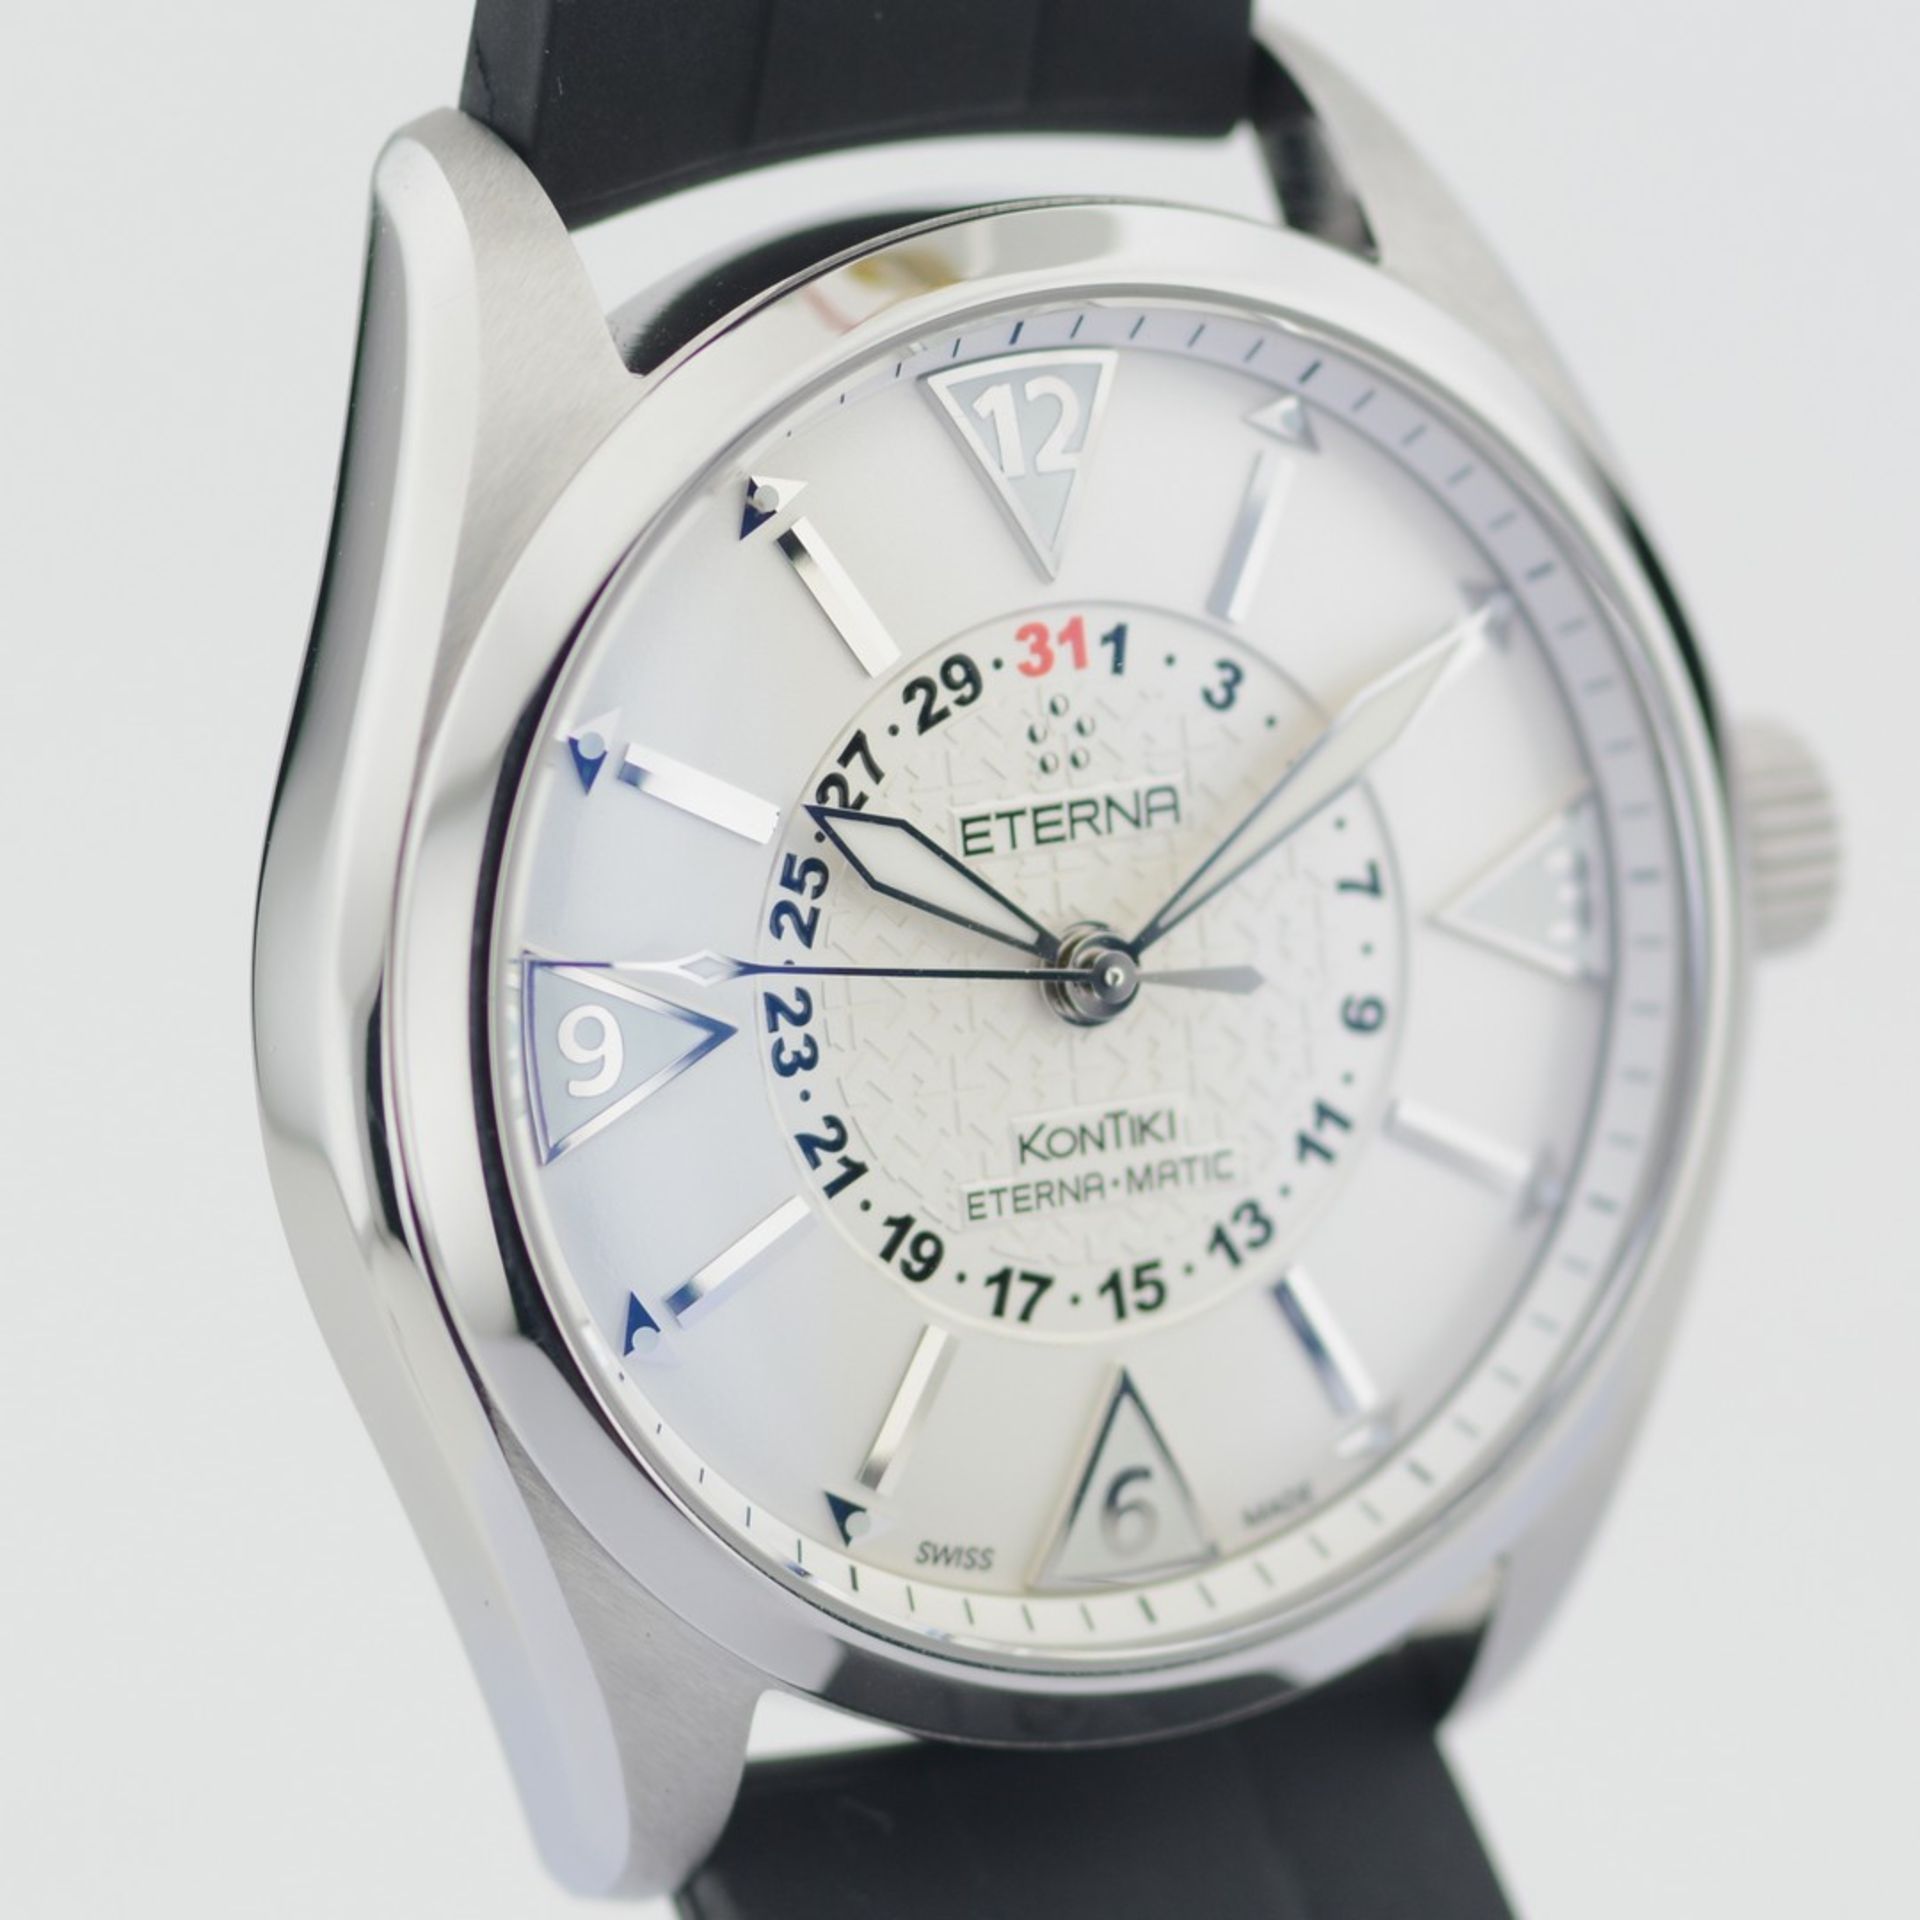 Eterna-Matic / Kontiki - Four Hands - Gentlemen's Steel Wristwatch - Image 4 of 8